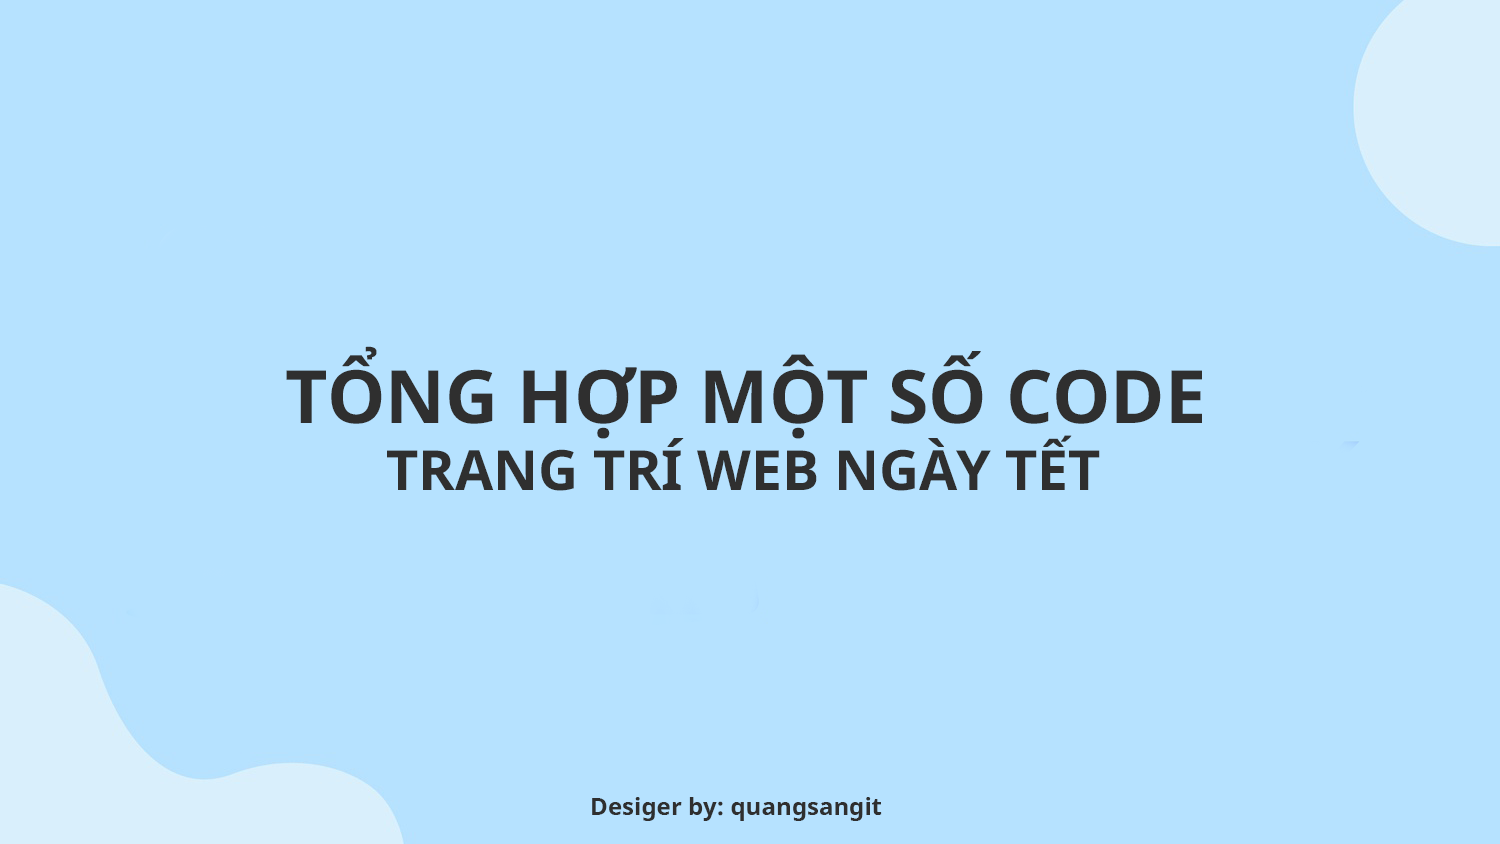 Tong Hop Mot So Code Trang Tri Trang Web Ngay